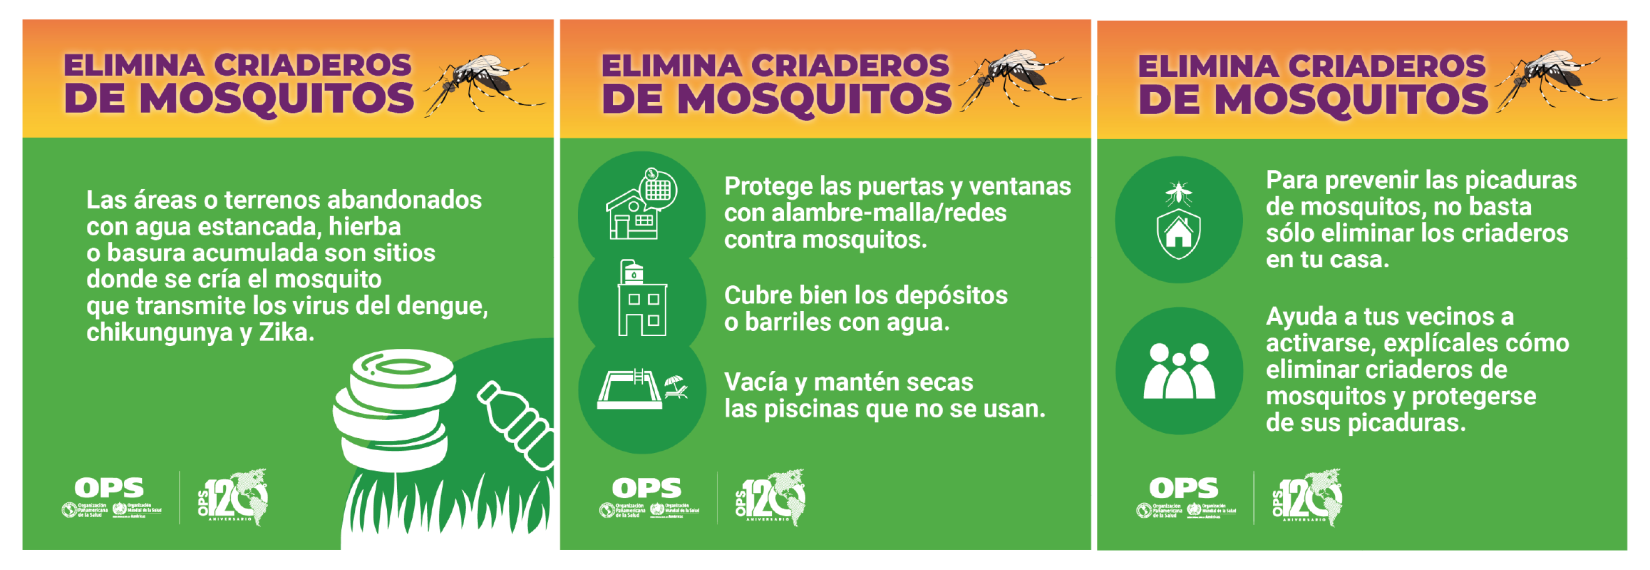 Elimina criaderos de mosquitos